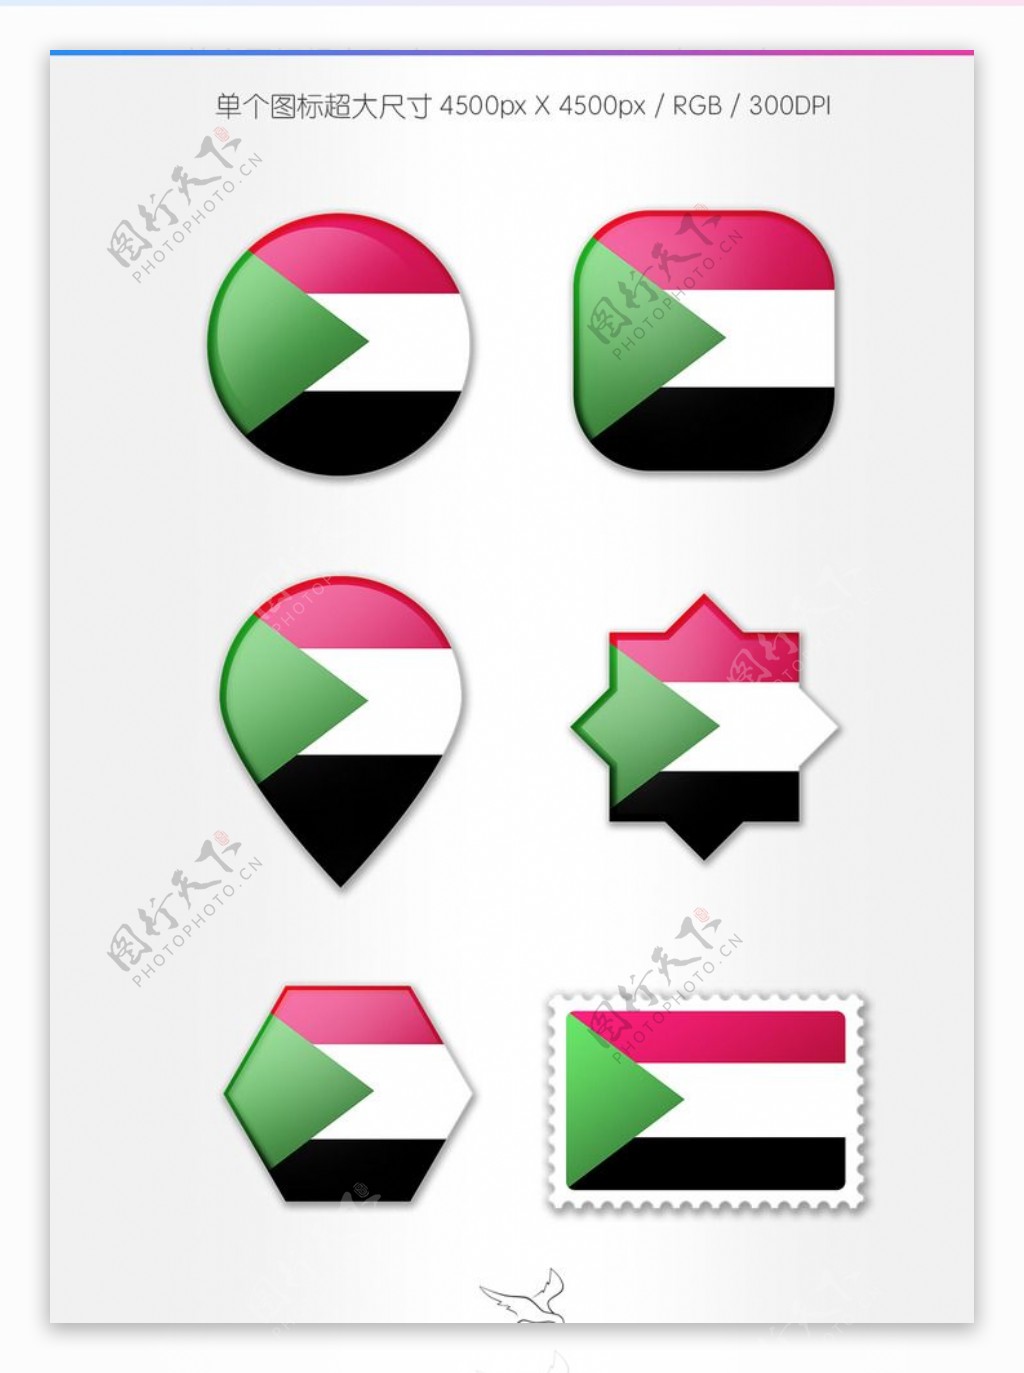 苏丹国旗图标